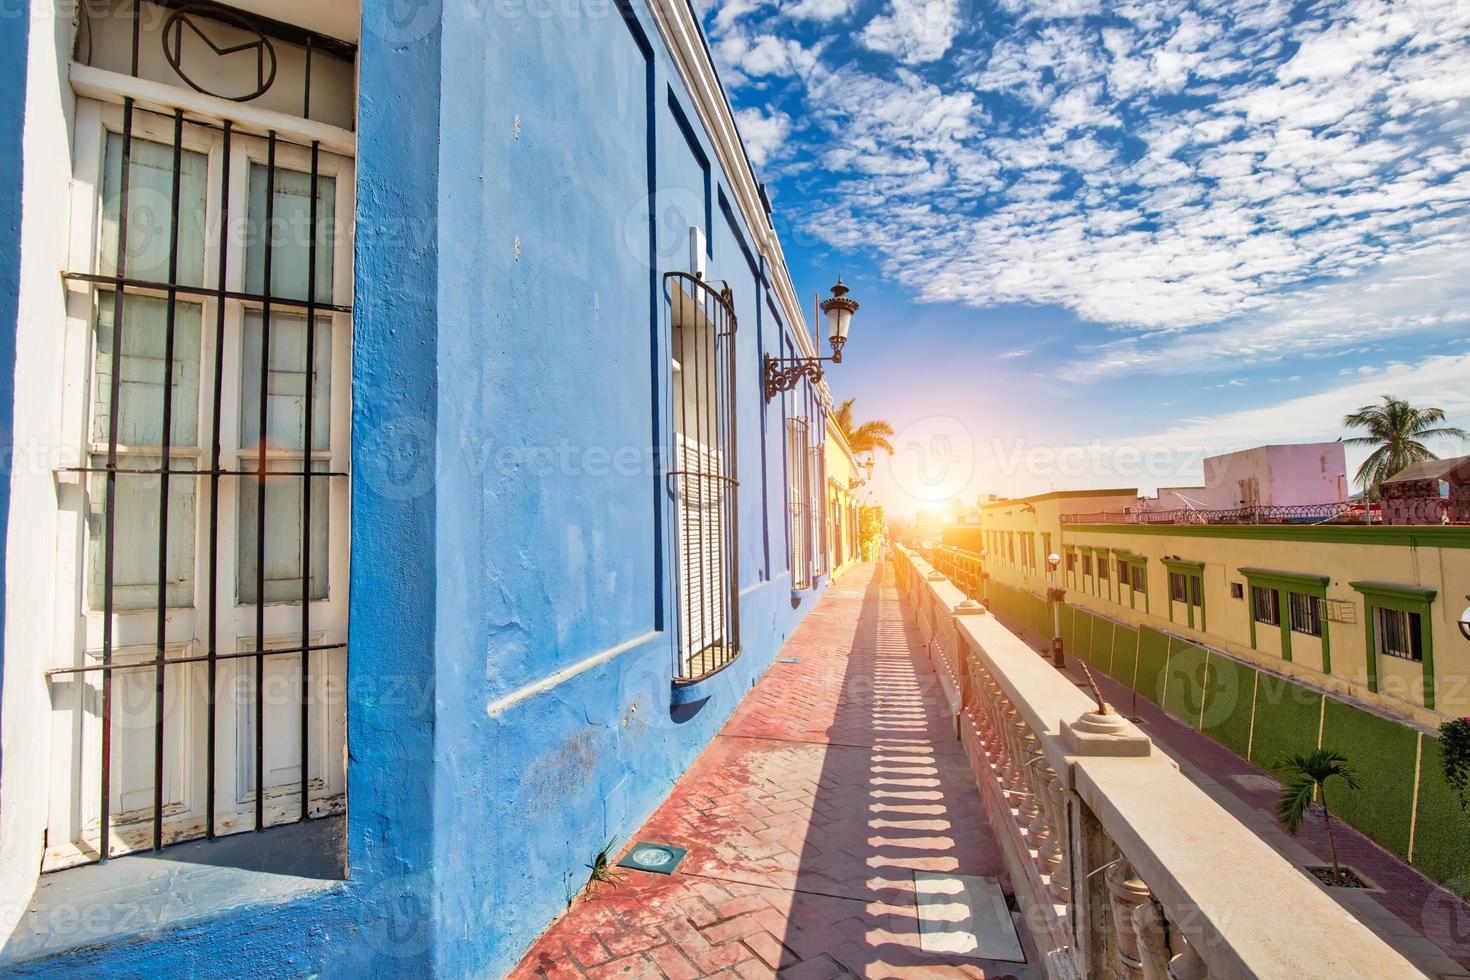 mexico, mazatlan, kleurrijke oude stadsstraten in het historische stadscentrum foto